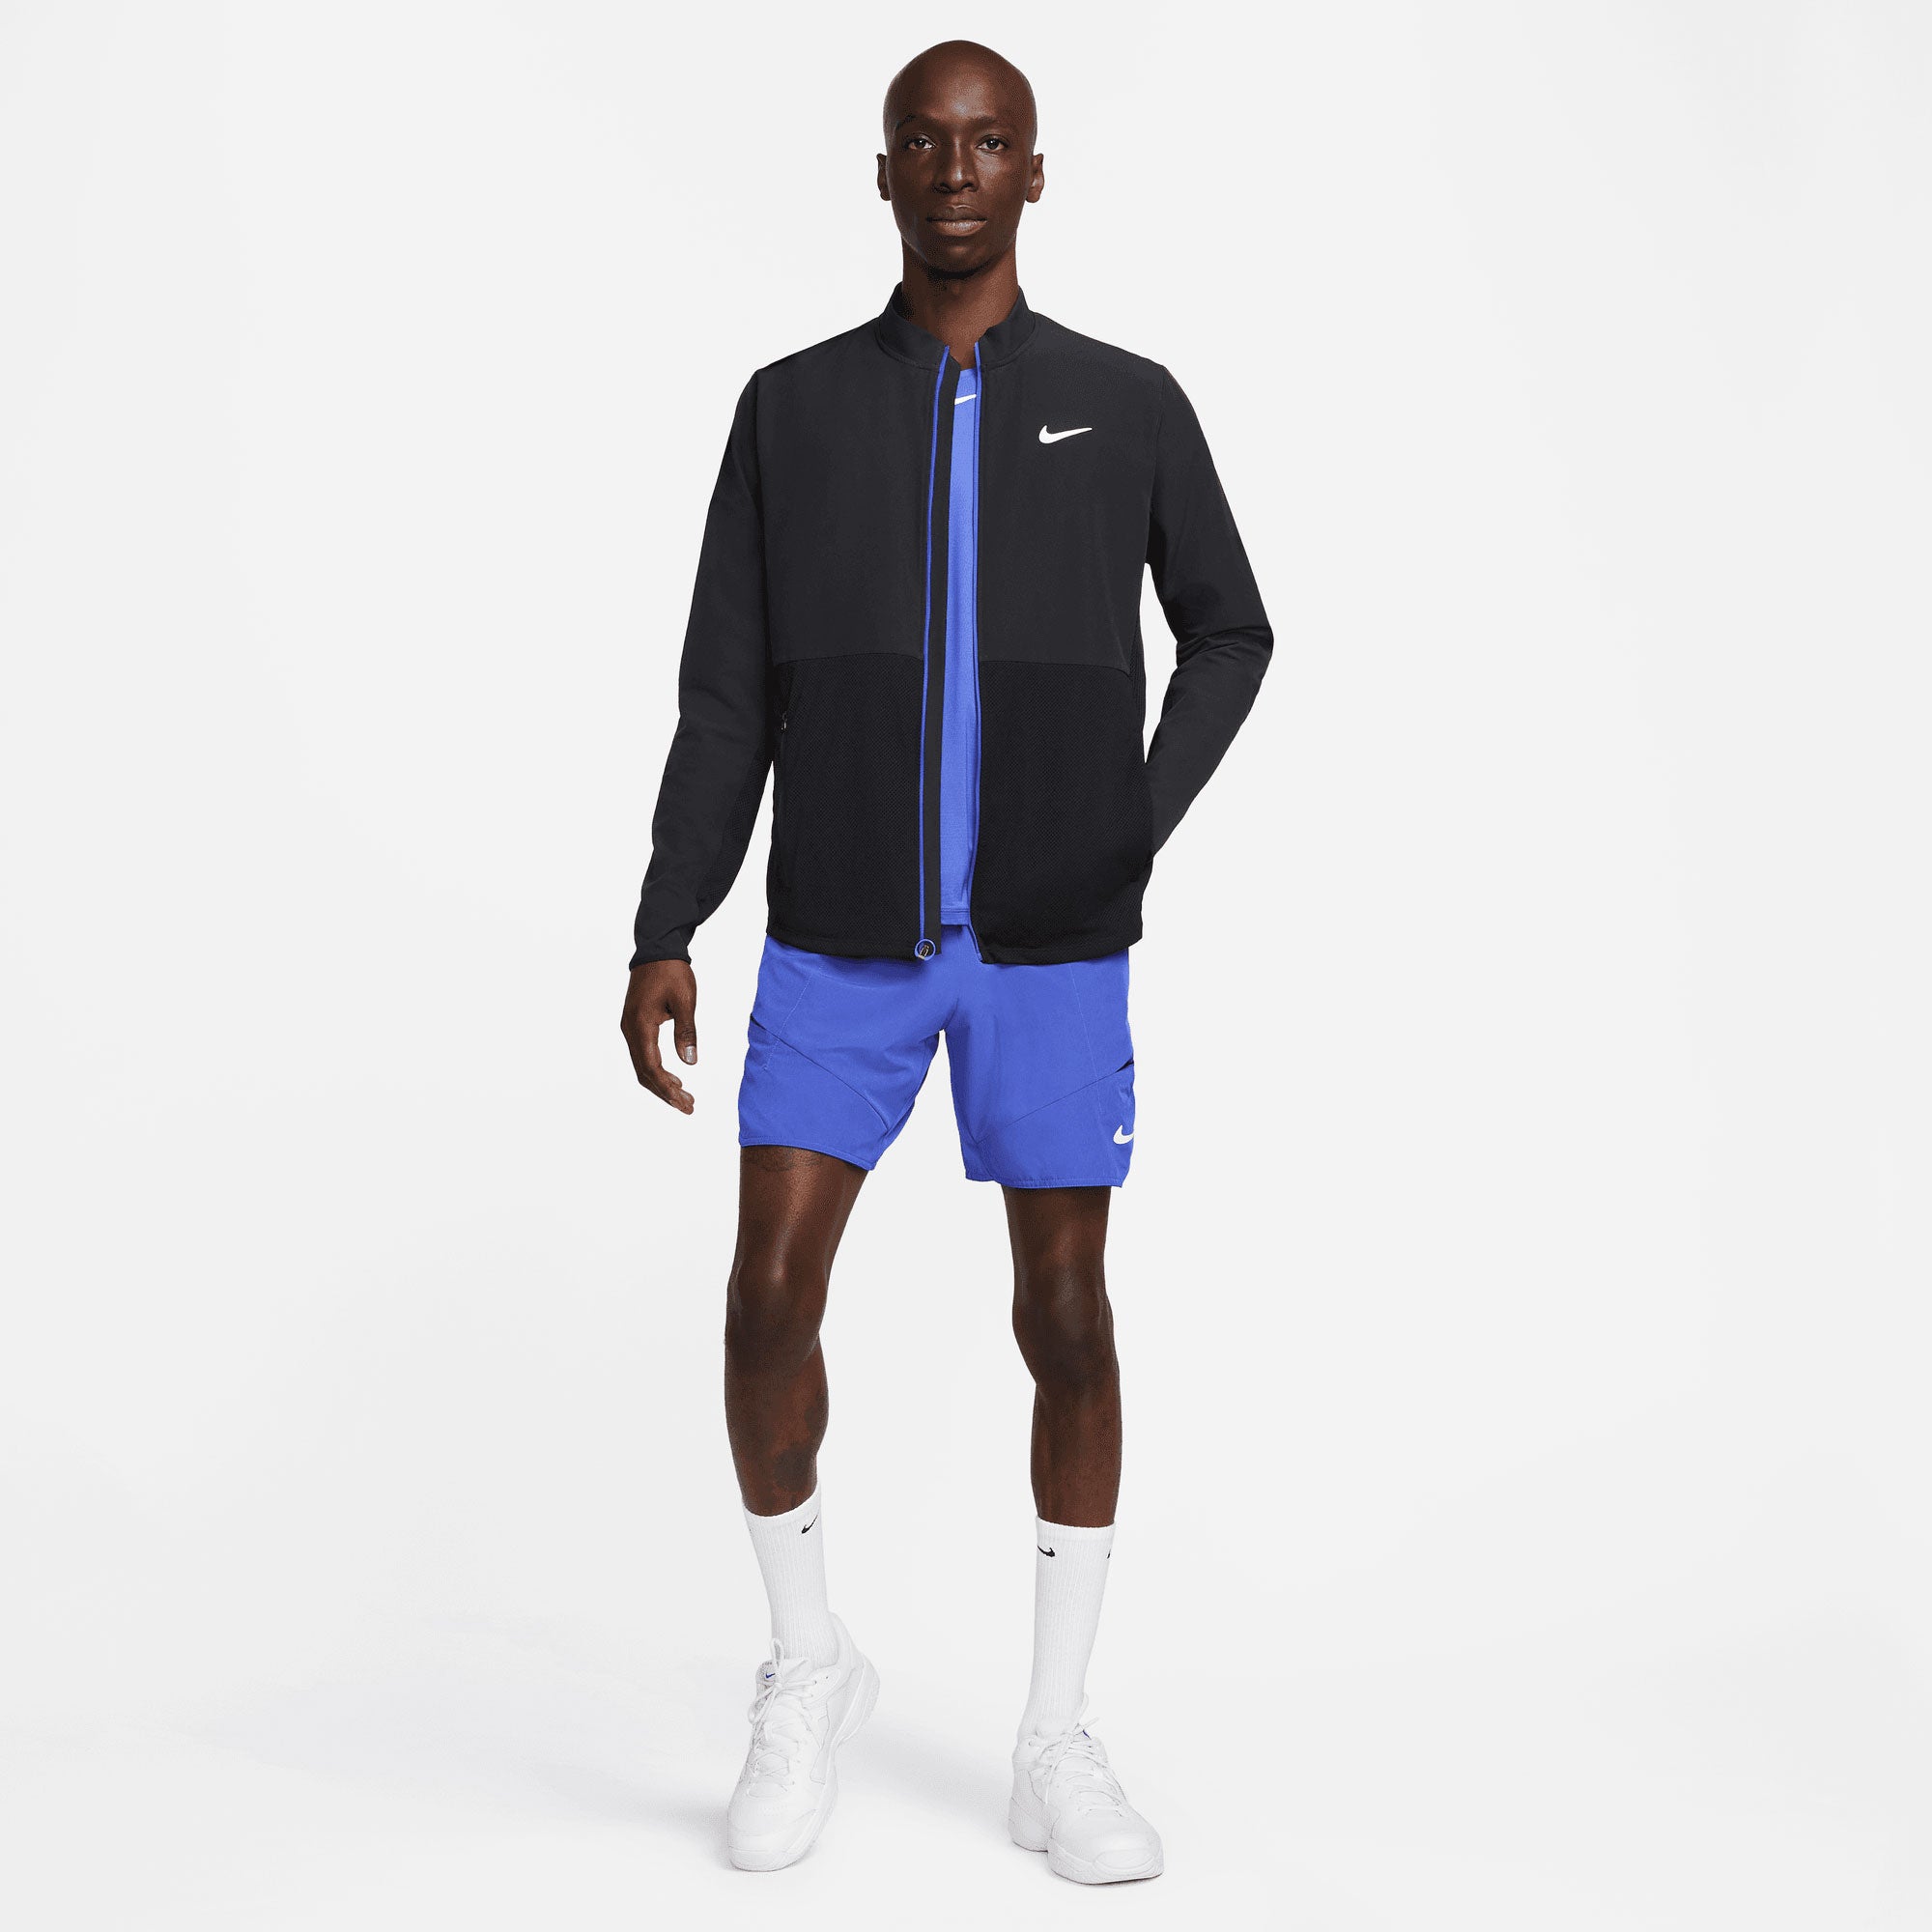 NikeCourt Advantage Men's Packable Tennis Jacket Black (6)